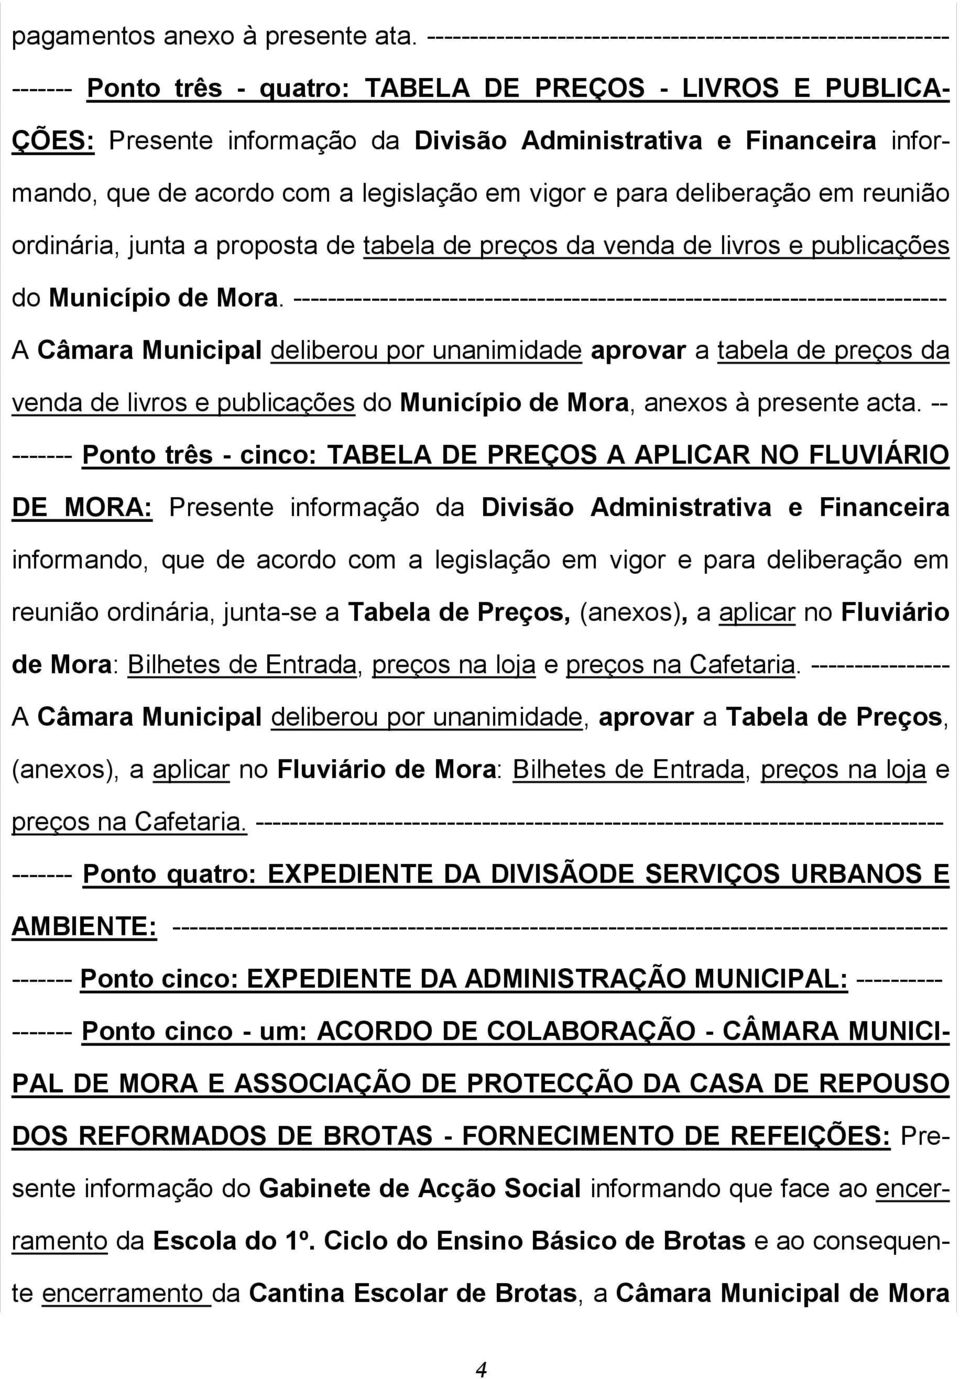 informando, que de acordo com a legislação em vigor e para deliberação em reunião ordinária, junta a proposta de tabela de preços da venda de livros e publicações do Município de Mora.